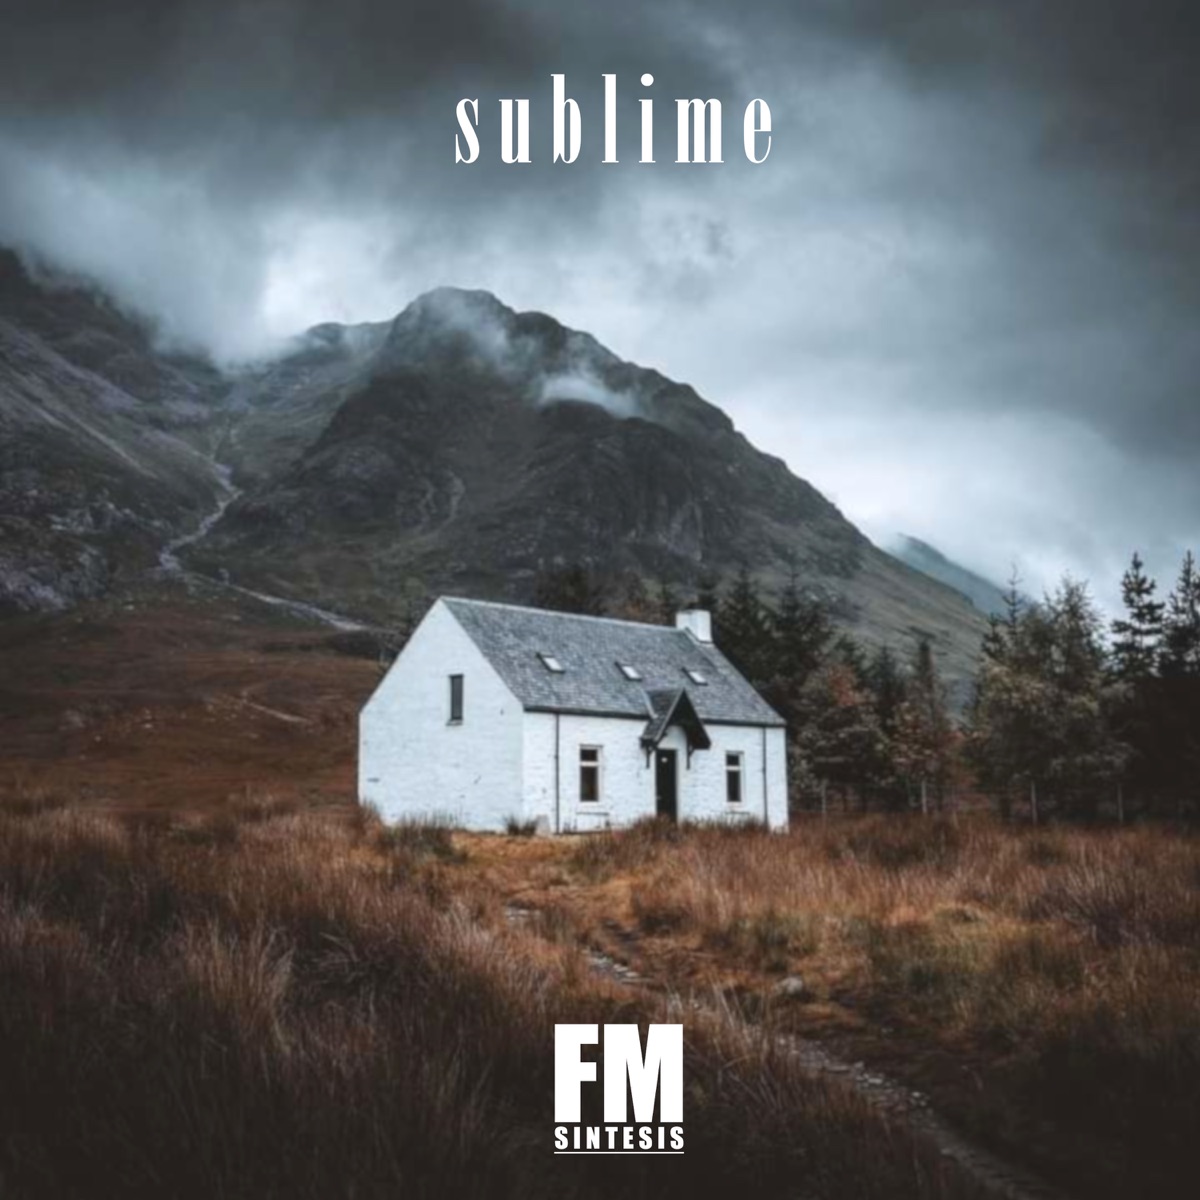 Sublime - Single - Album by FM síntesis - Apple Music